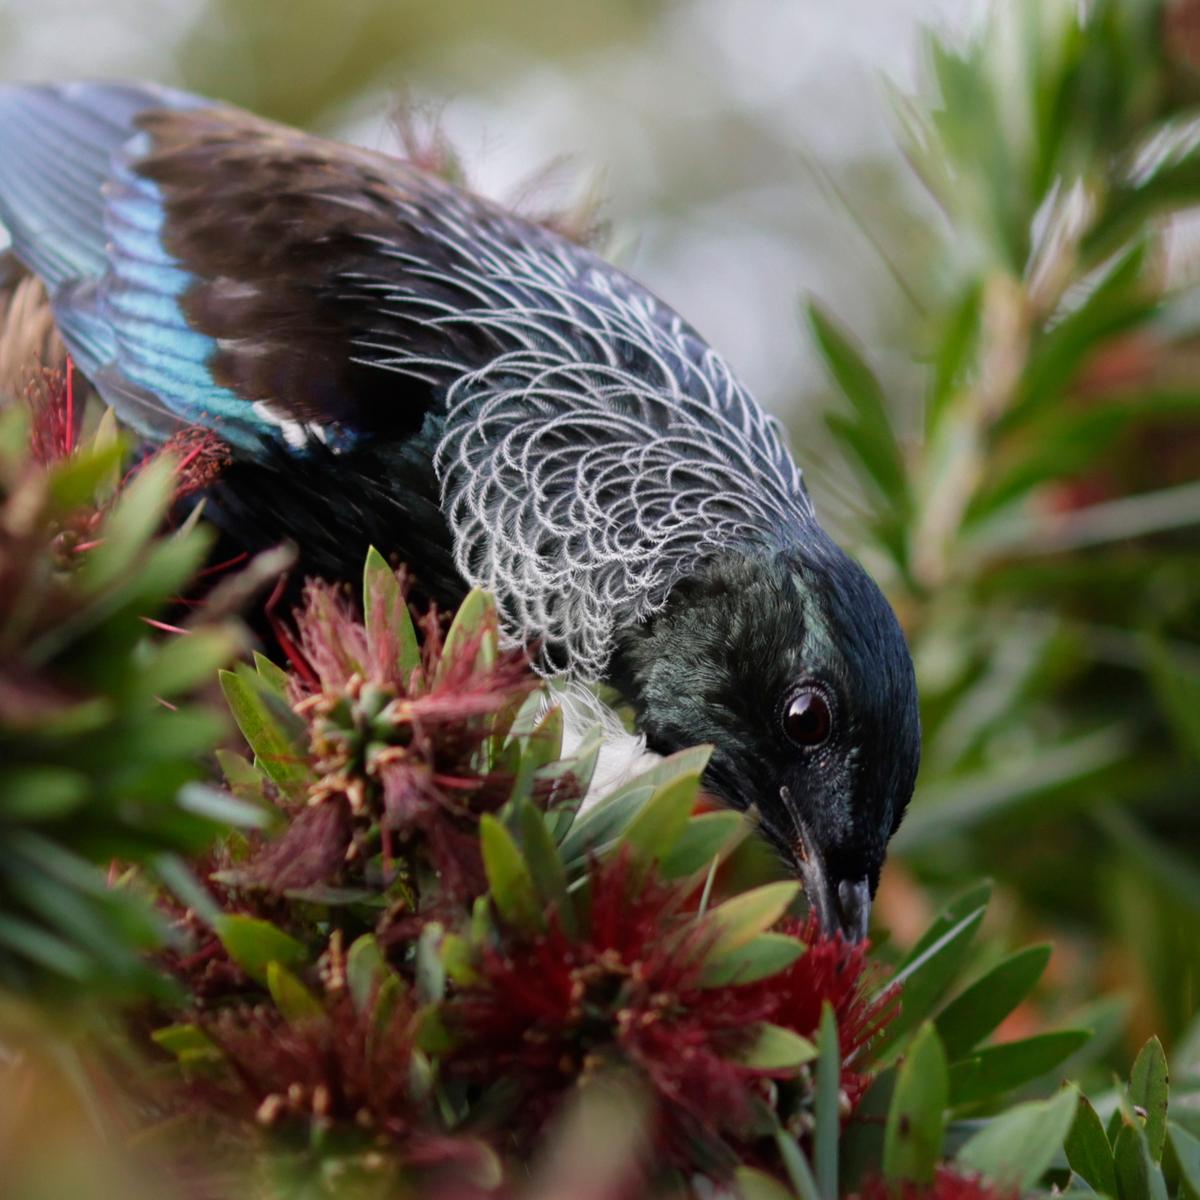 xiao bin wang; New Zealand beautiful bird...Tui